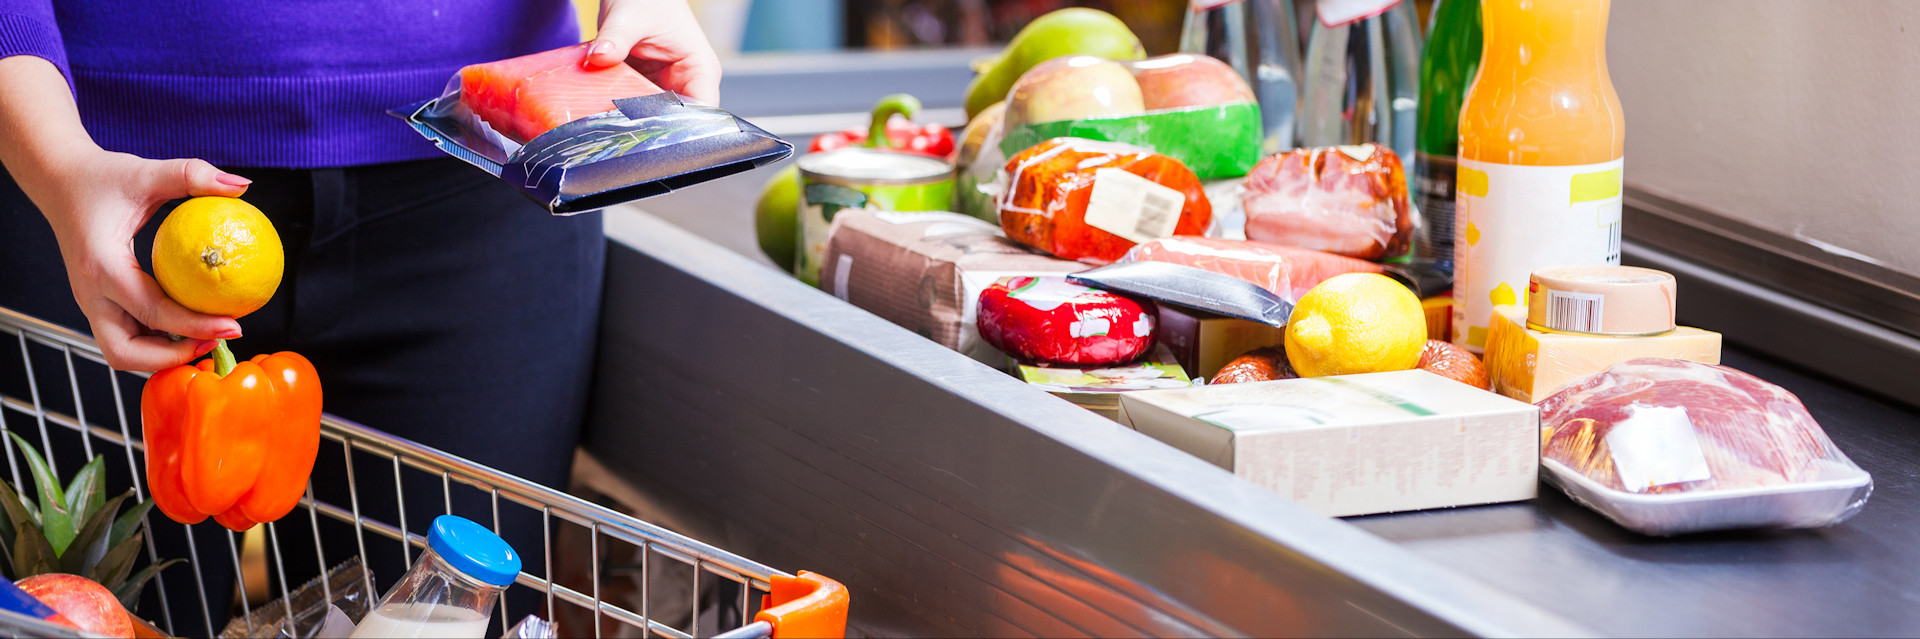 Supermärkte - Top-aktuelle Adressen (Lebensmittel-Einzelhandel, Discounter, Bio-Märkte)